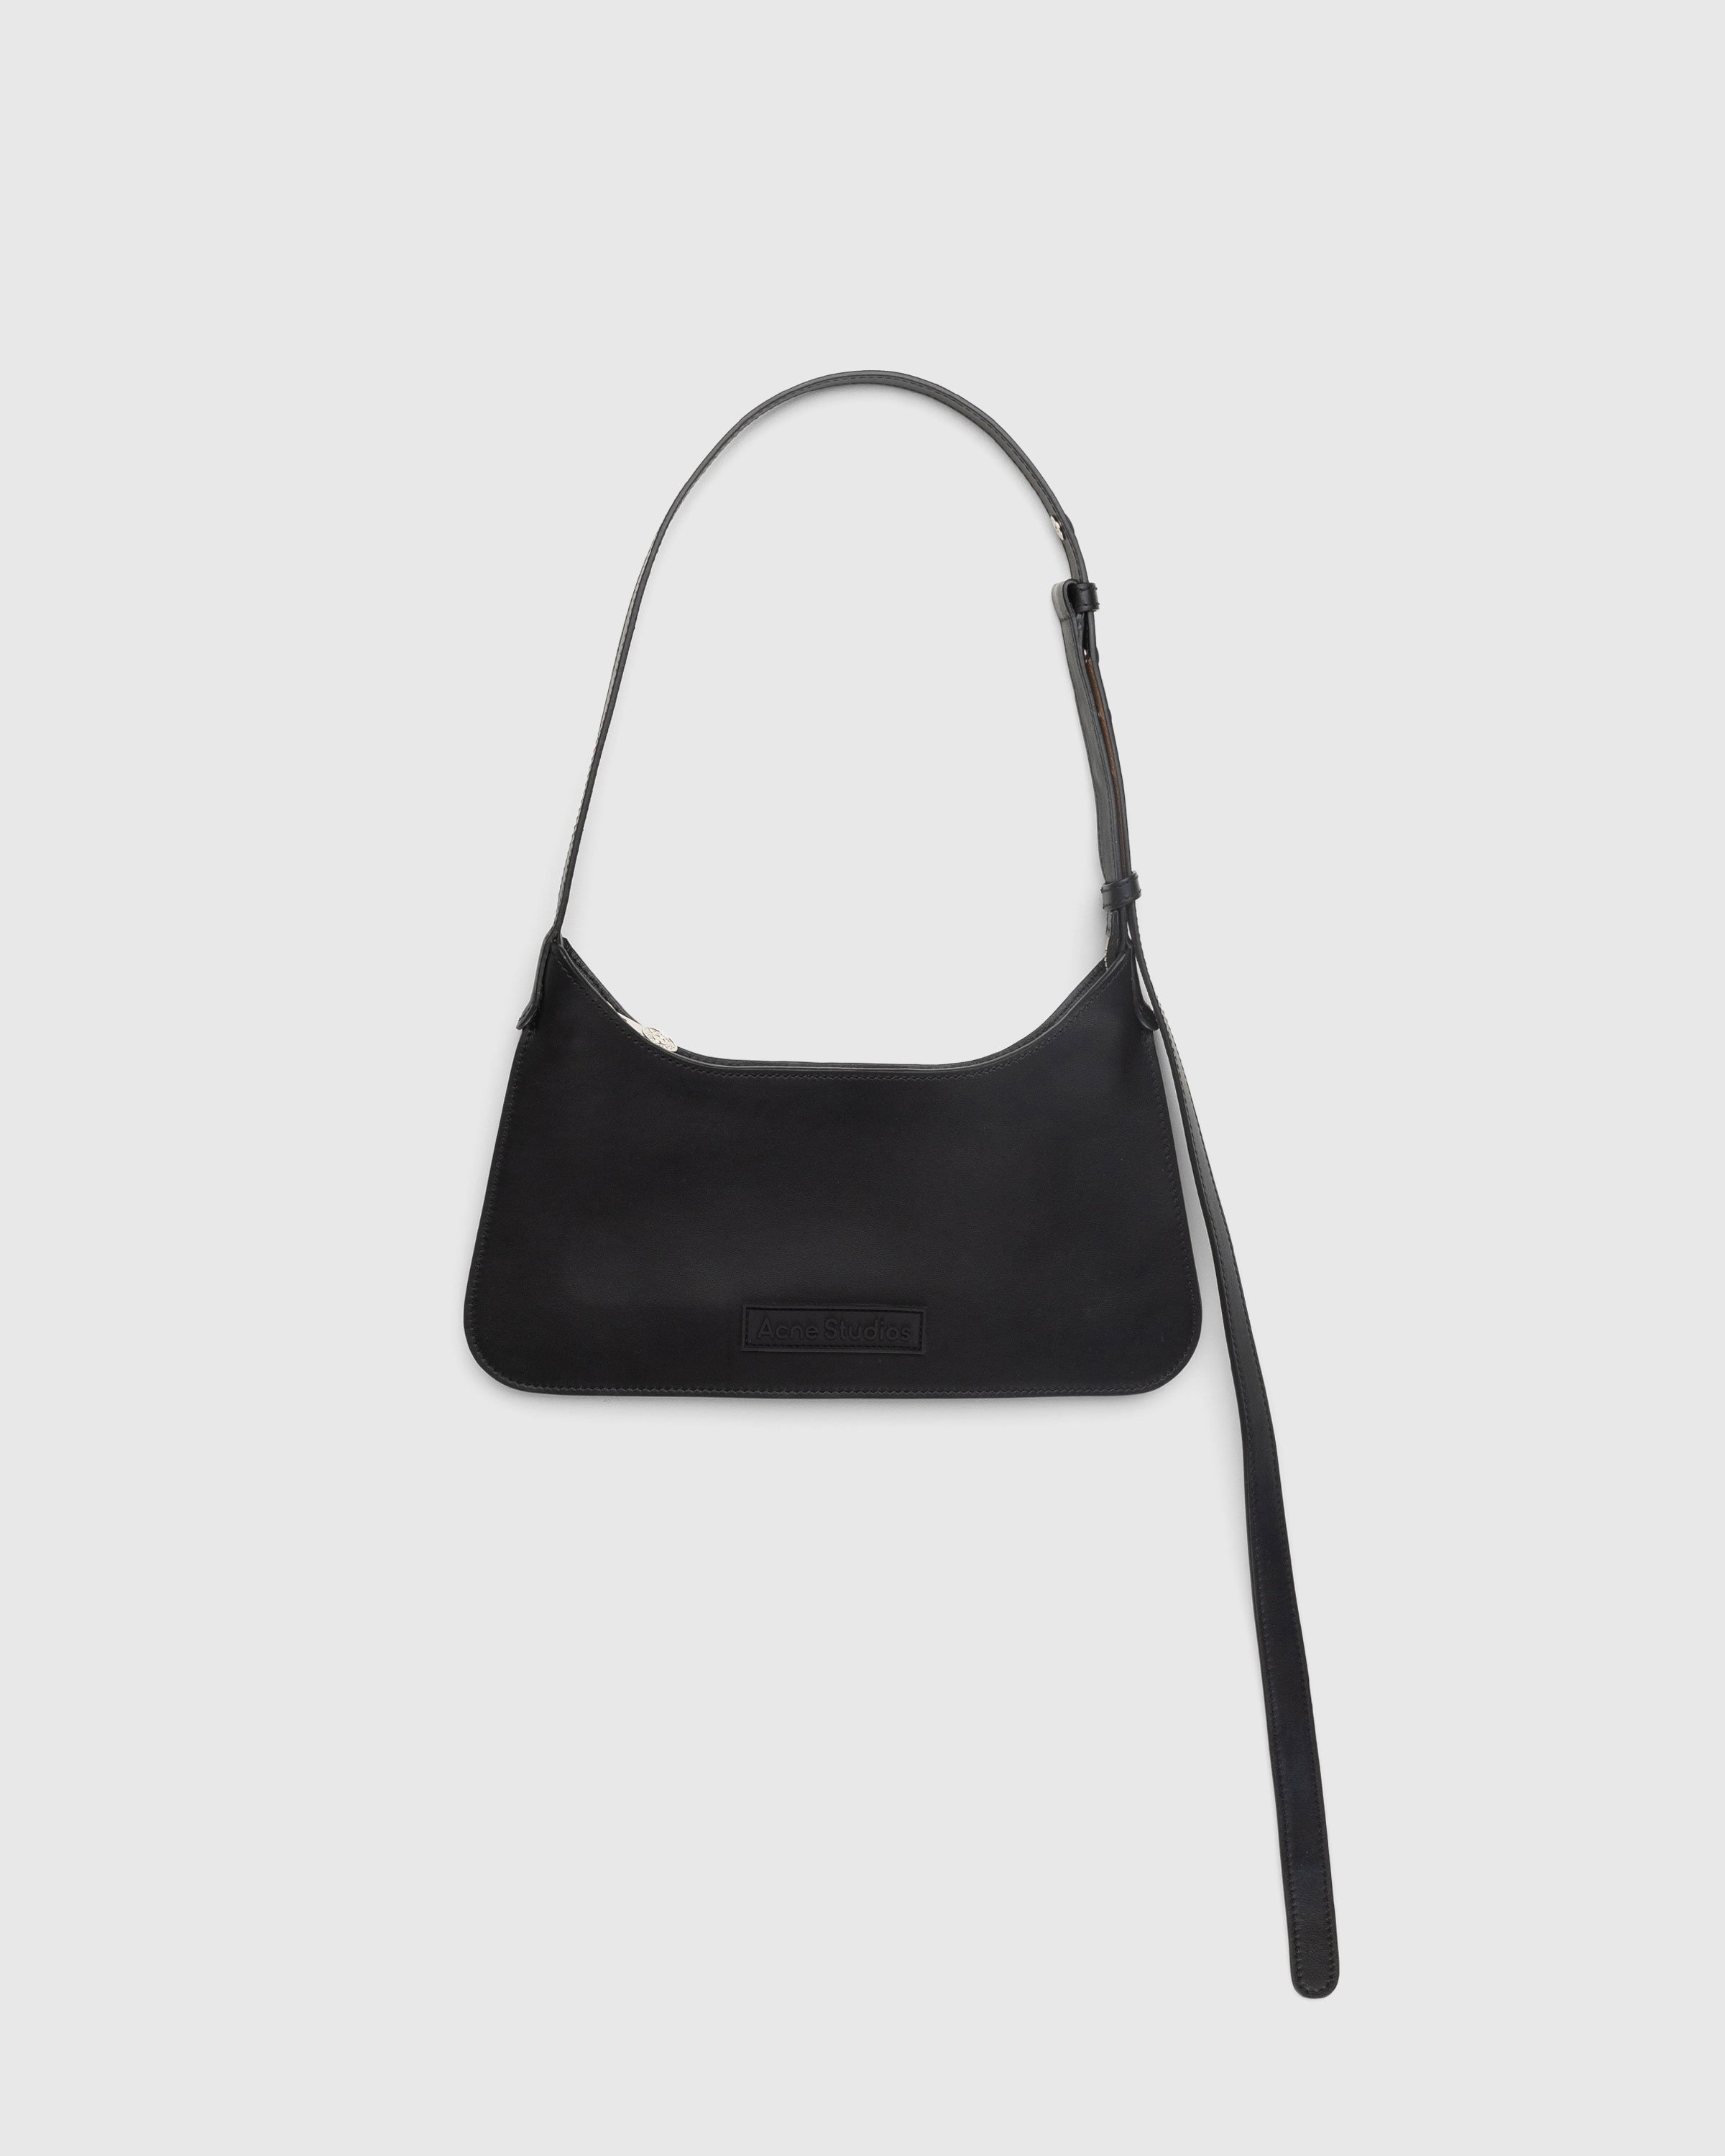 Acne Studios - Platt Mini Shoulder Bag Black - Accessories - Black - Image 1